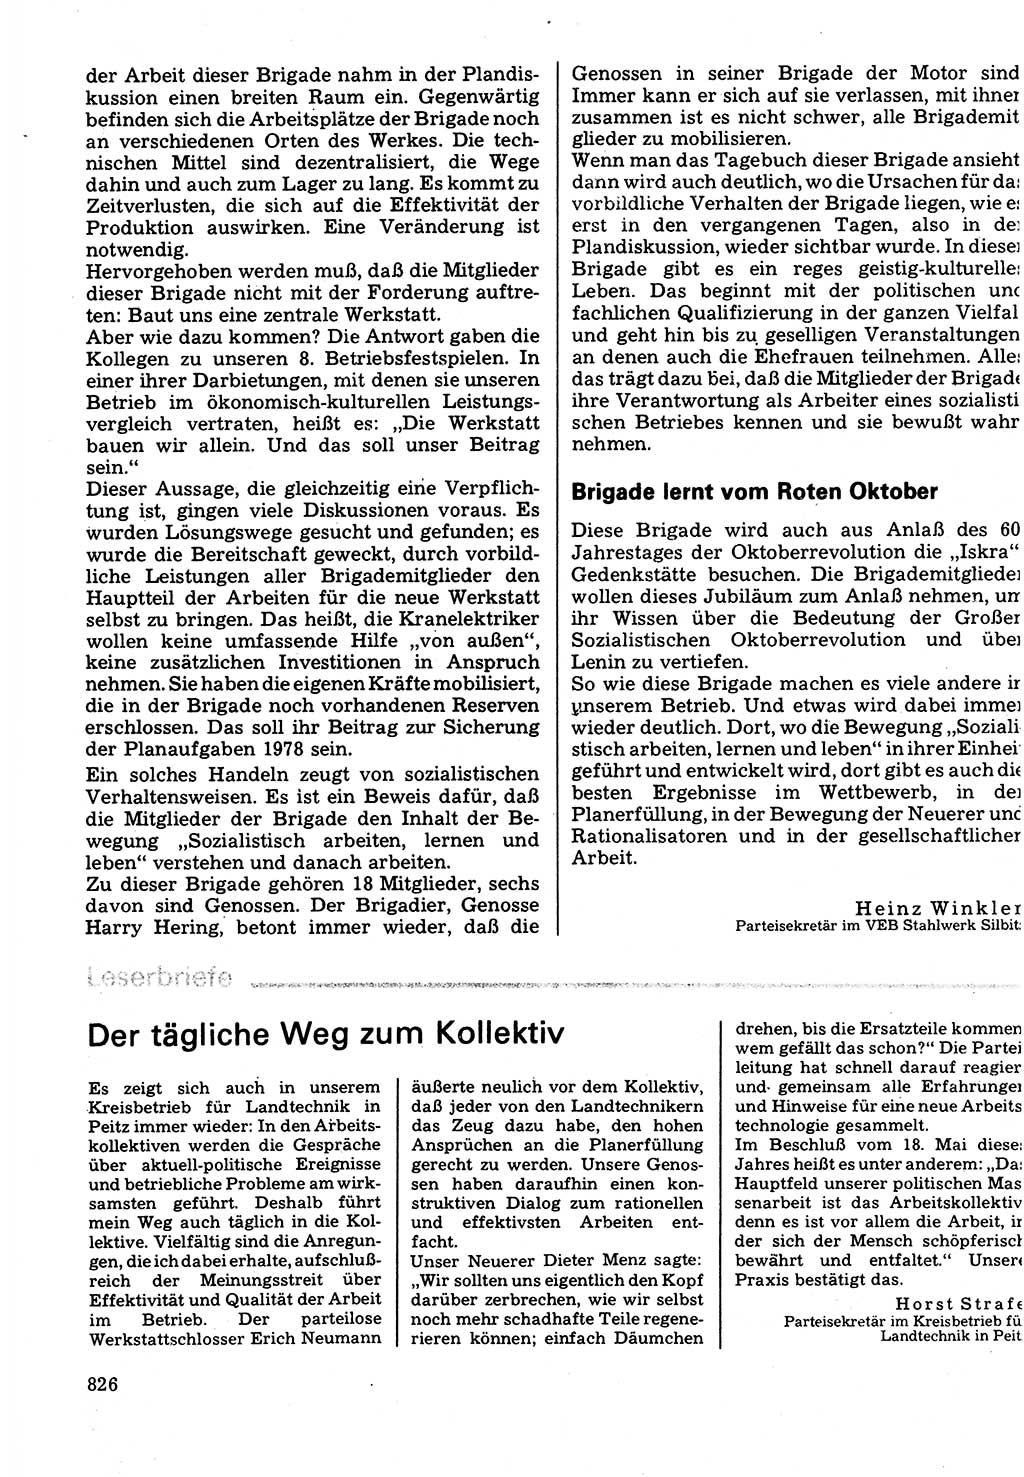 Neuer Weg (NW), Organ des Zentralkomitees (ZK) der SED (Sozialistische Einheitspartei Deutschlands) für Fragen des Parteilebens, 32. Jahrgang [Deutsche Demokratische Republik (DDR)] 1977, Seite 826 (NW ZK SED DDR 1977, S. 826)